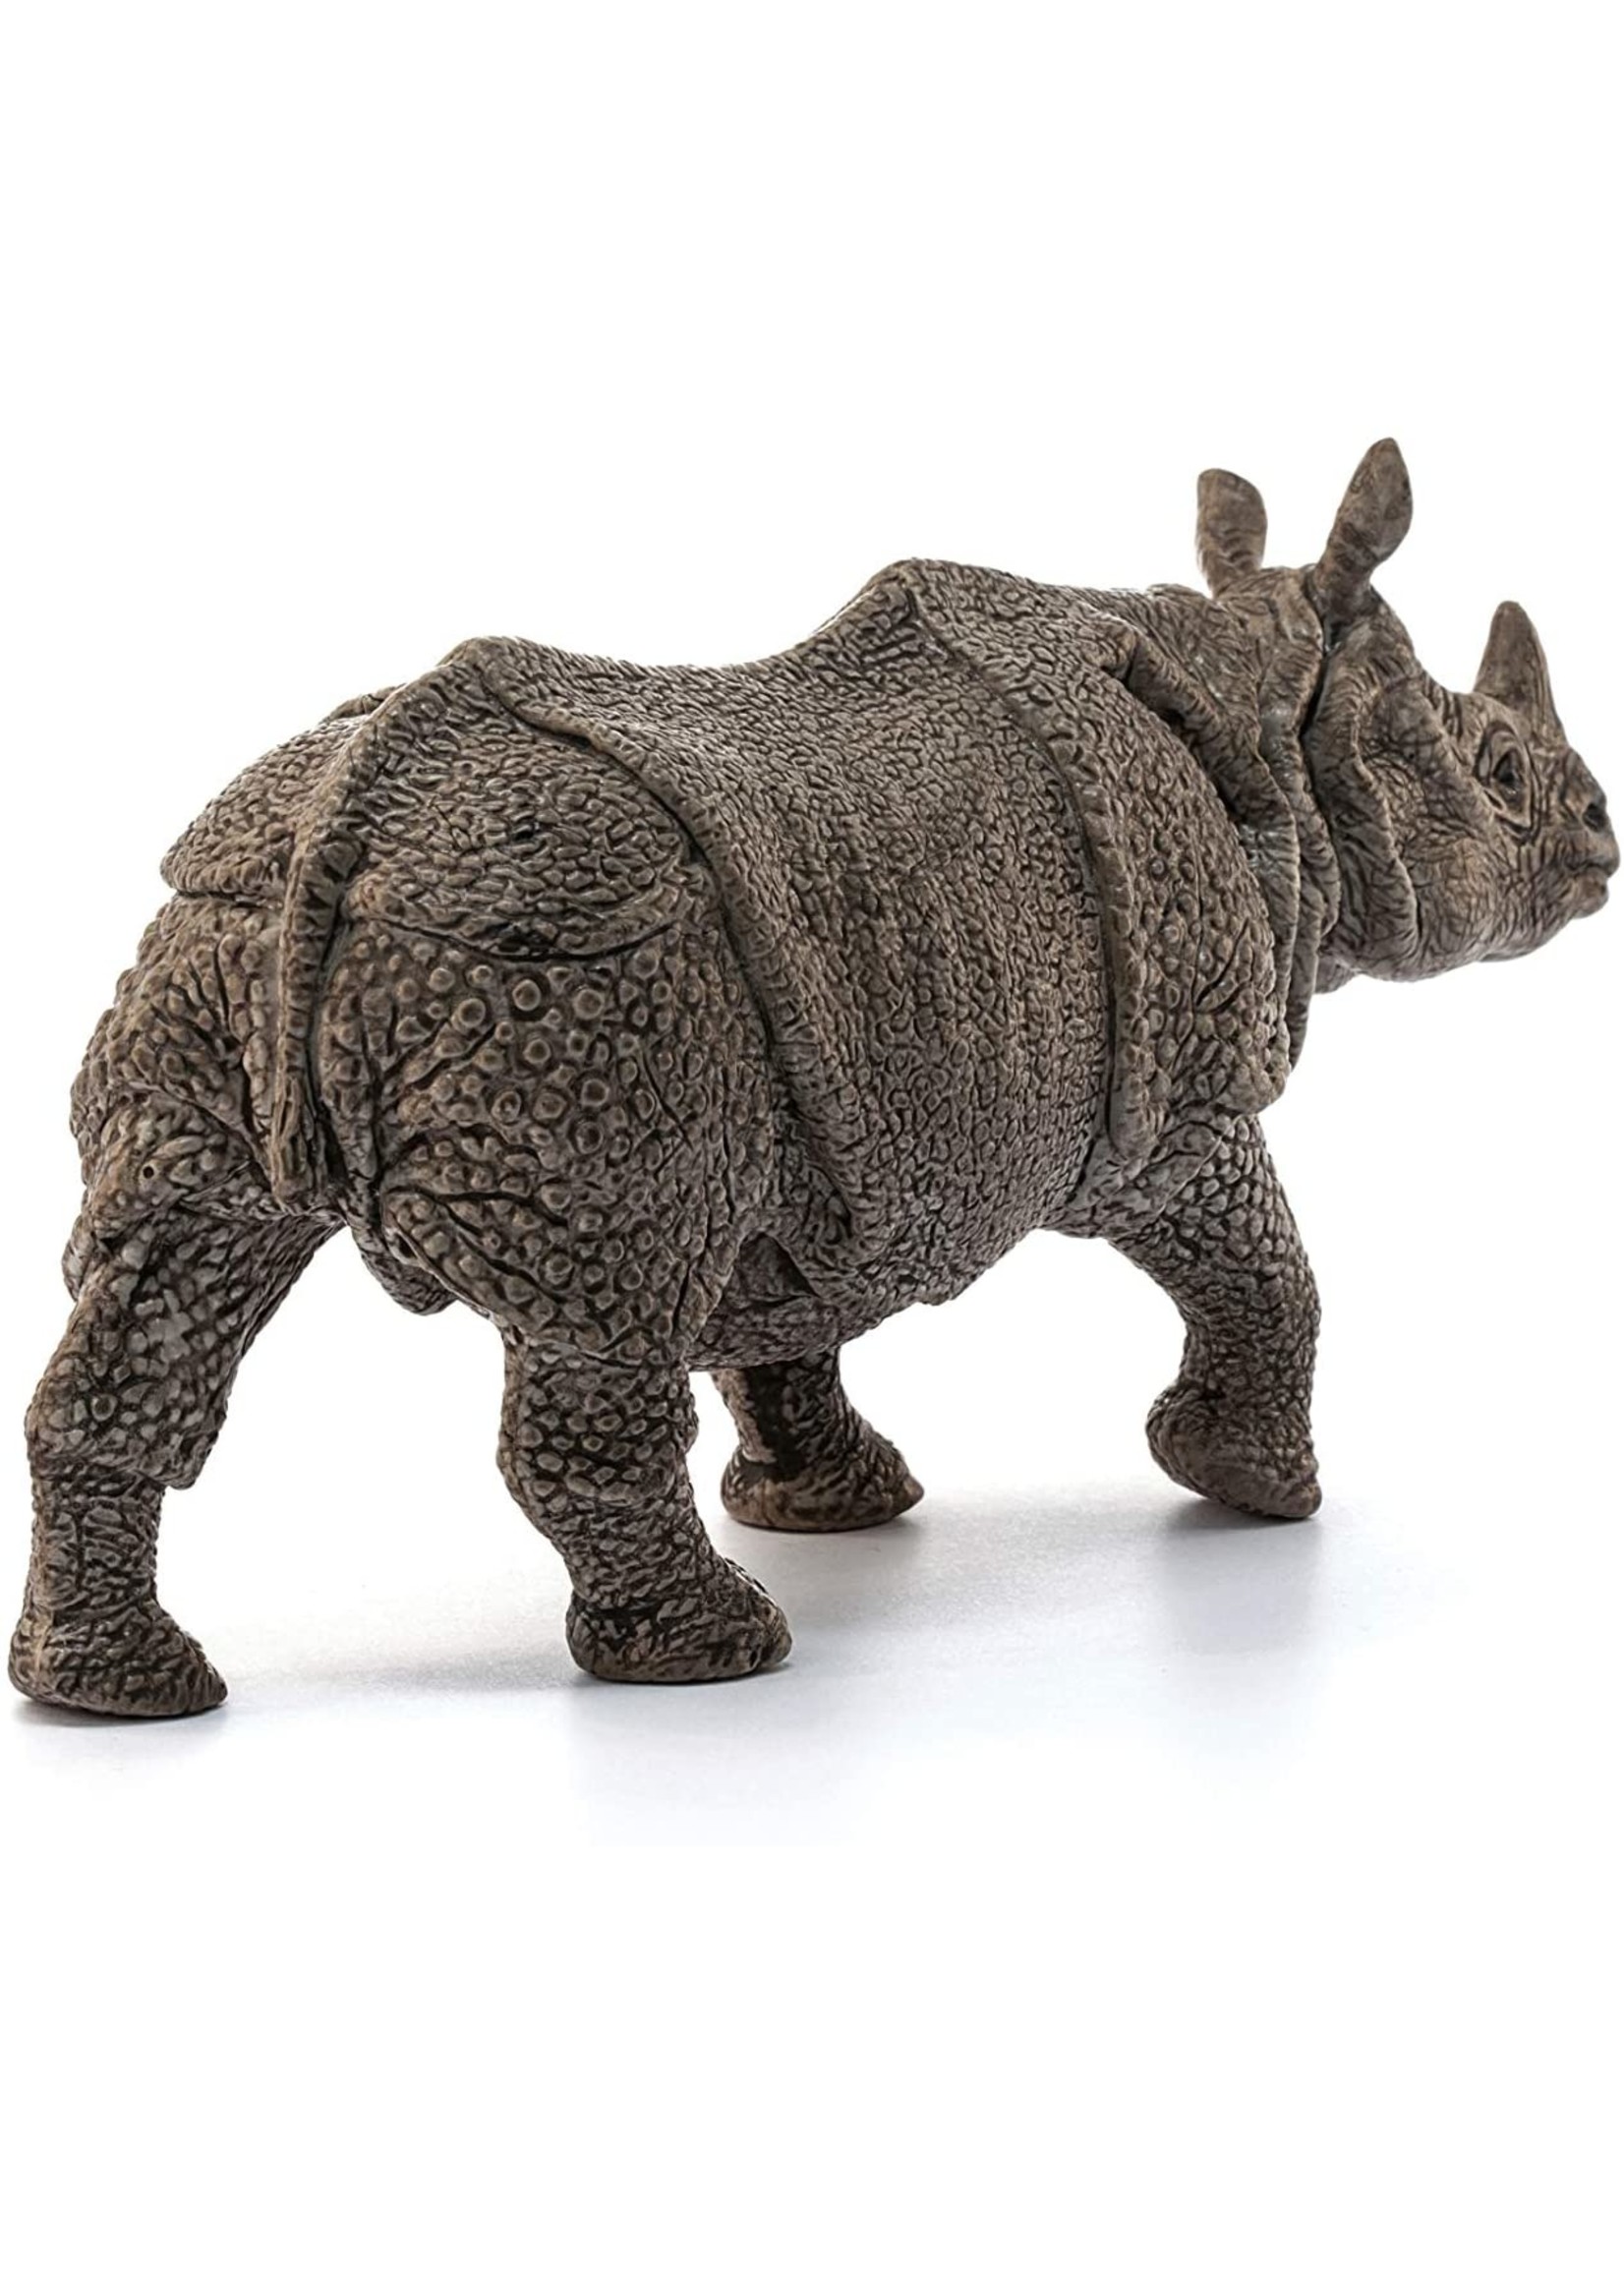 Schleich 14816 - Indian Rhinoceros